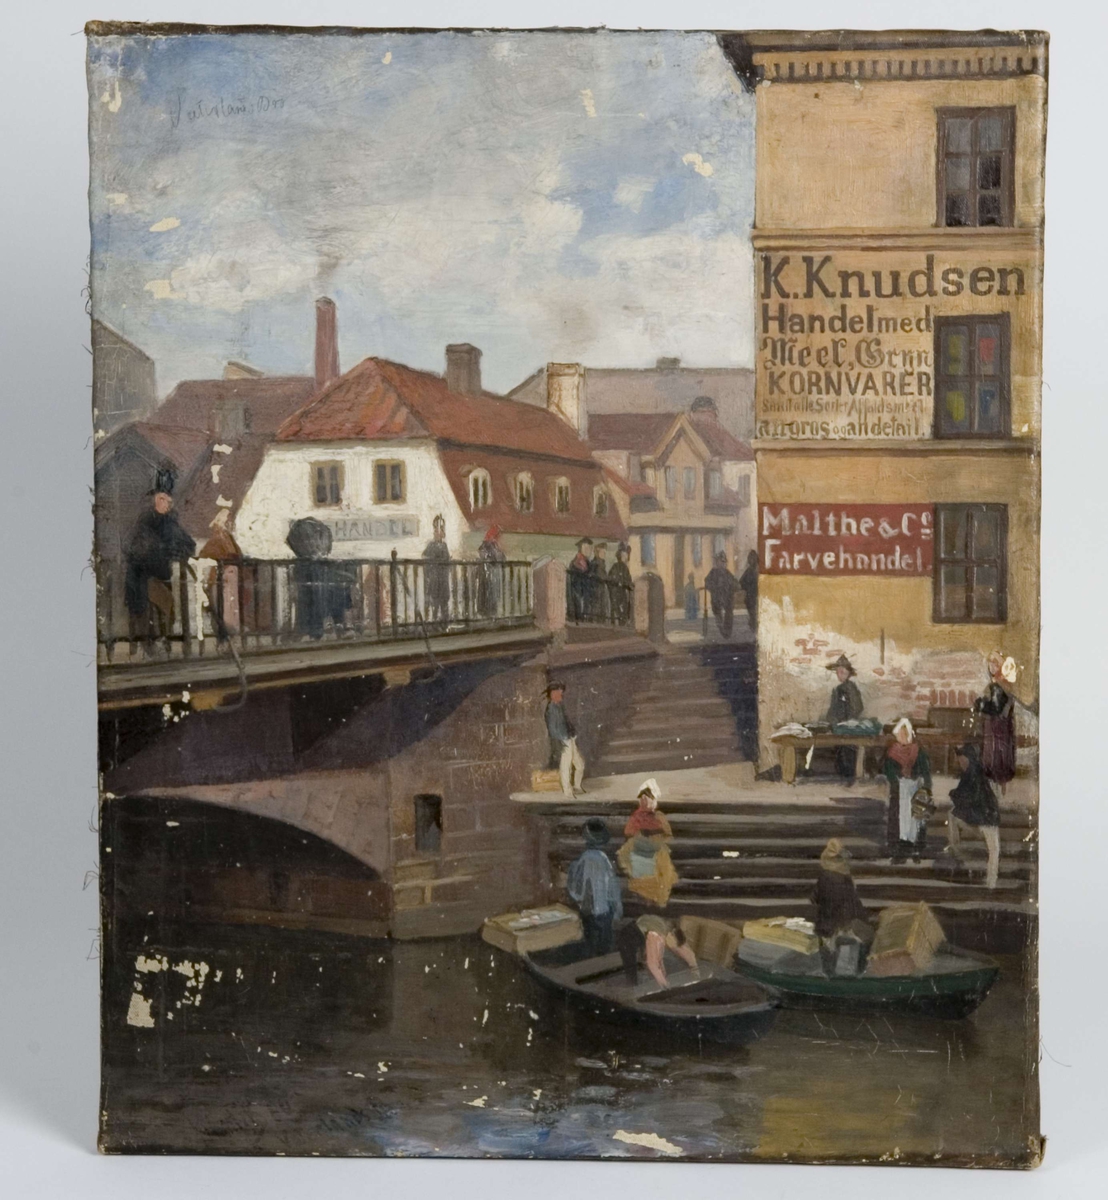 Utsnitt fra Vaterland med Akerselva, Vaterland bro, bygninger og personer - på broen og i båt.